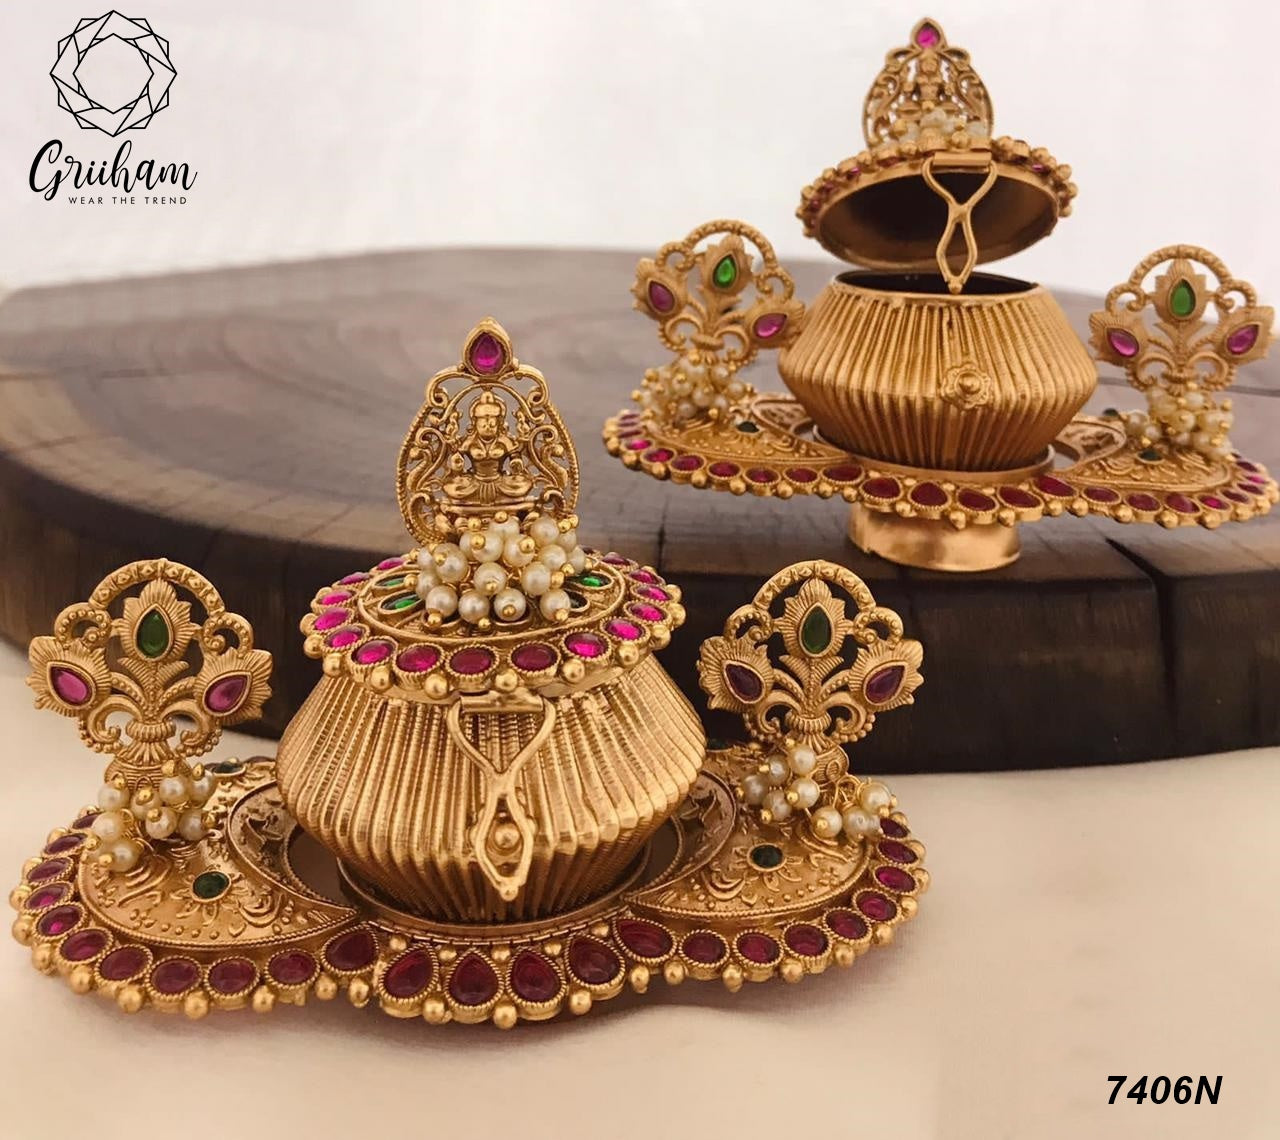 22k Gold Plated fully engraved Lakshmi Kumkum box 7406N